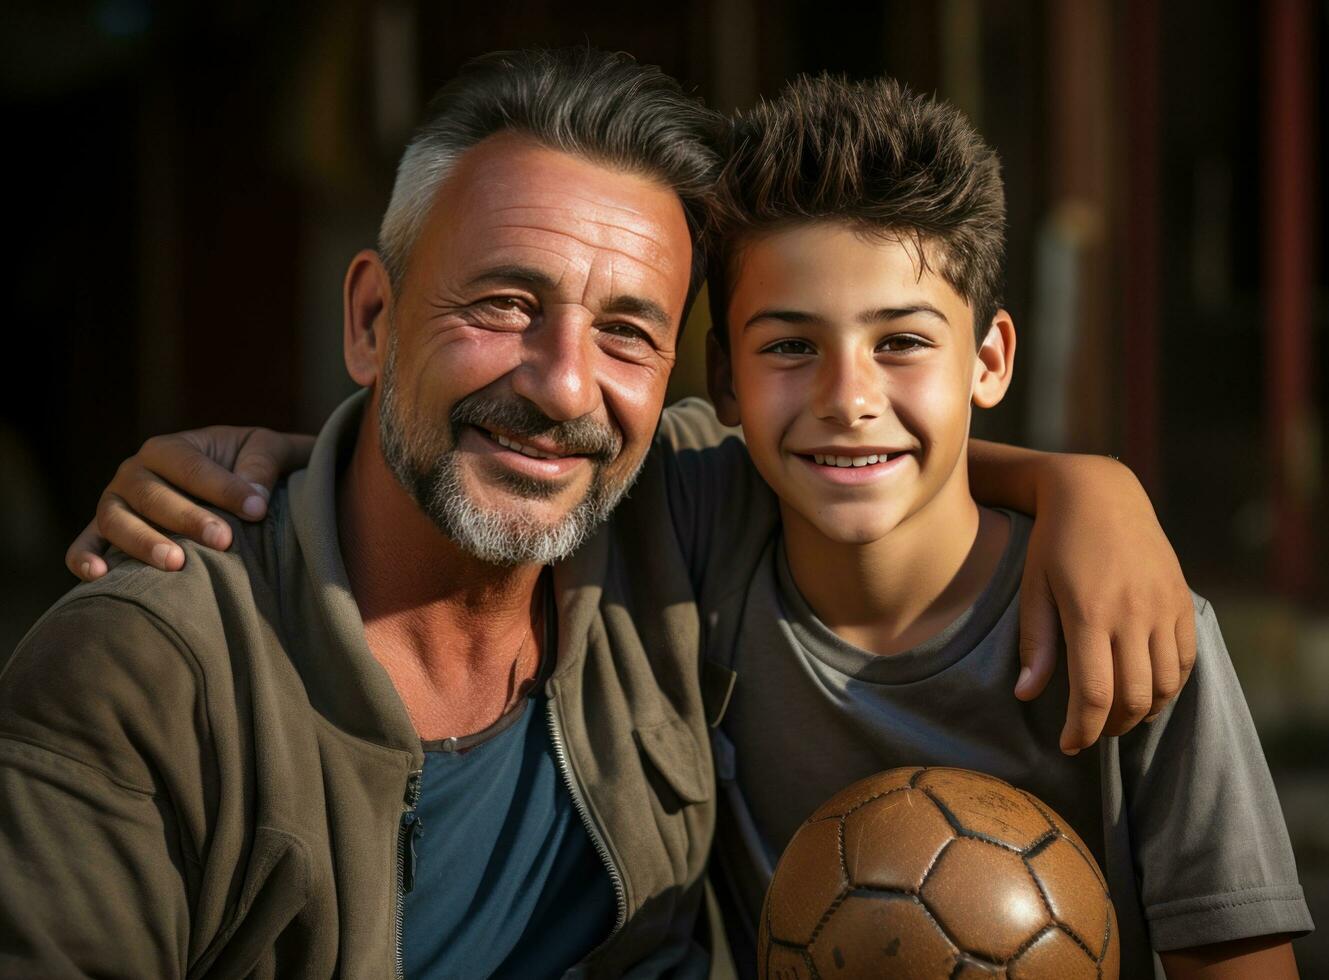 ai generiert jung Fußball Spieler und seine Vater posieren mit und Ball foto